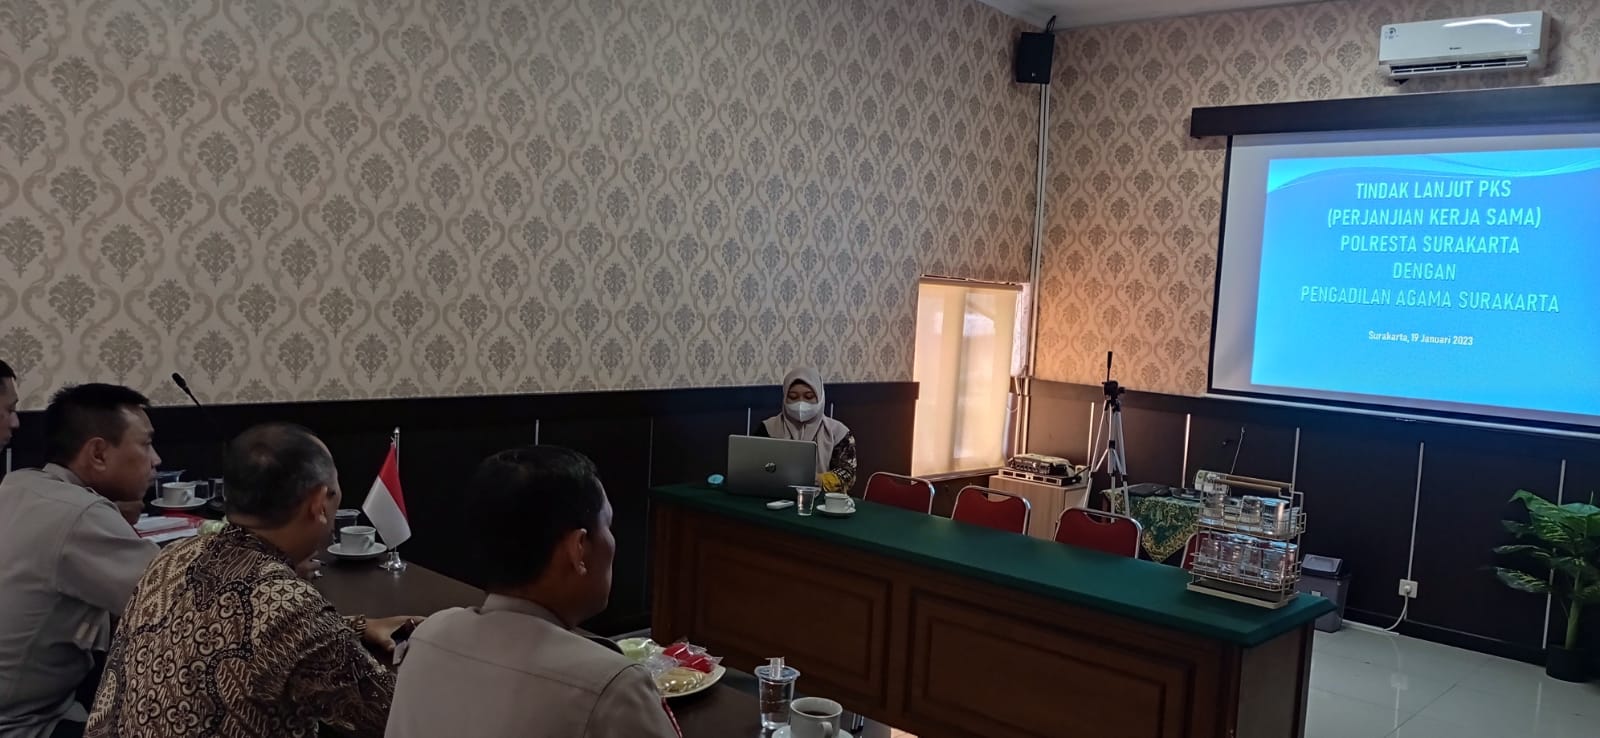 Sosialisasi Aplikasi Jamu Kuat dan Tindak lanjut Perjanjian Kerjasama Pengadilan Agama Surakarta dengan Polresta Surakarta